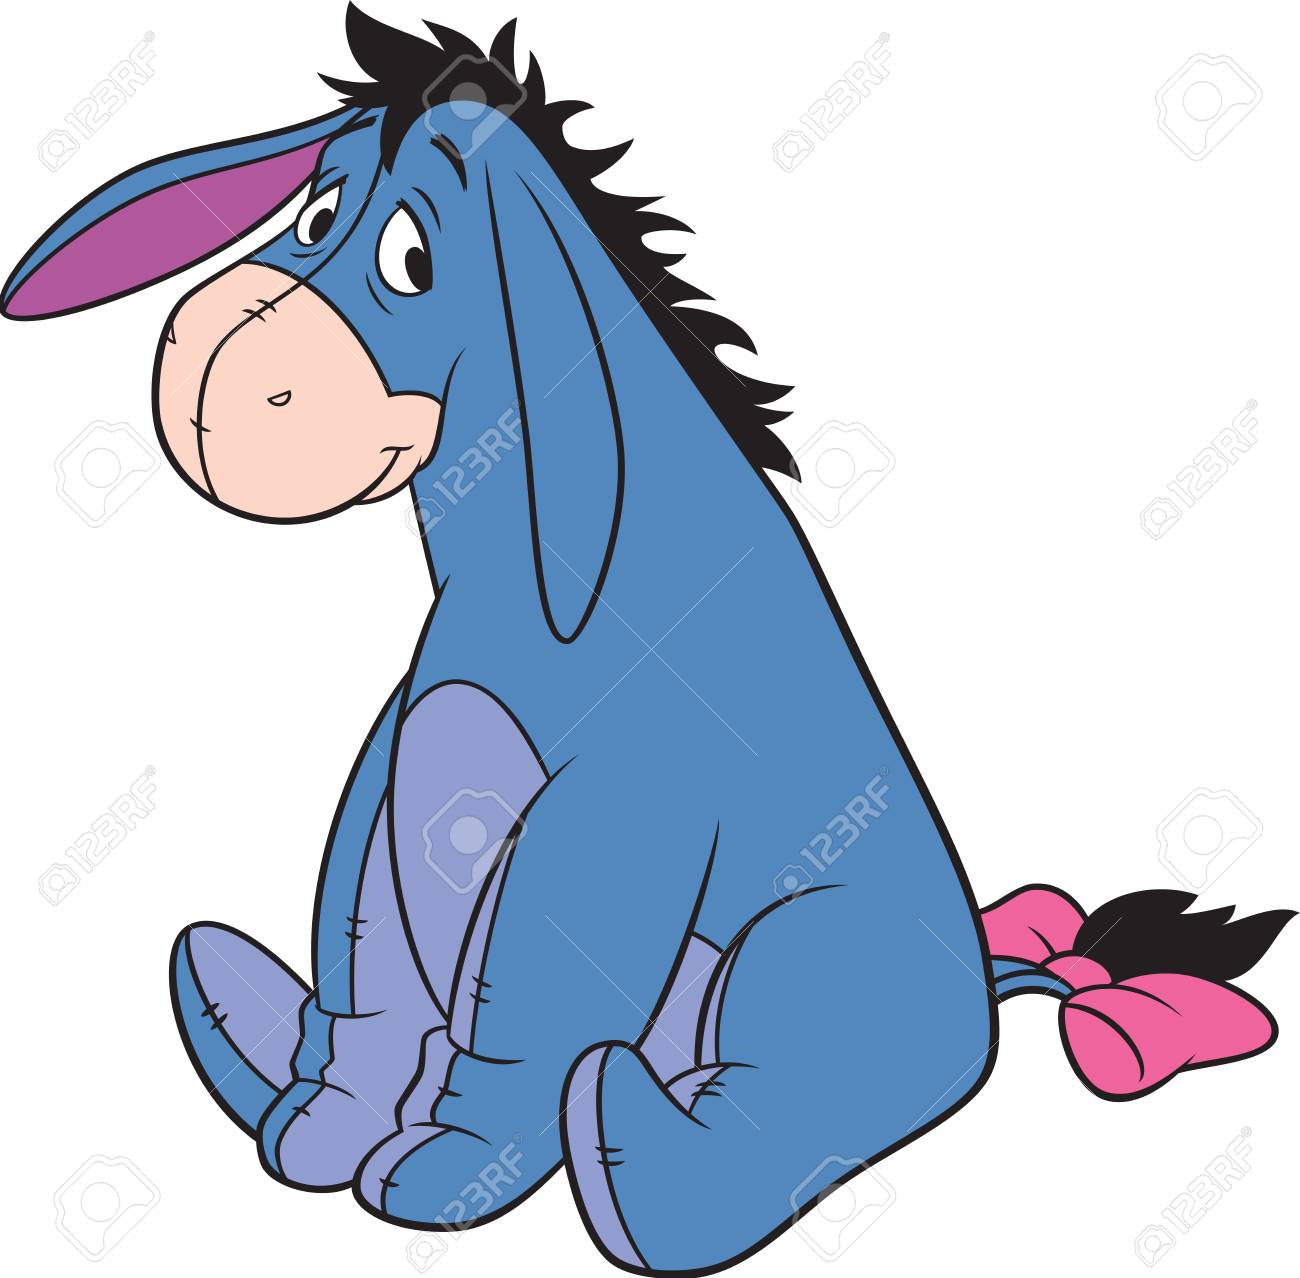 104747256-winnie-the-pooh-eeyore-donkey-seated-illustration-cartoon.jpg